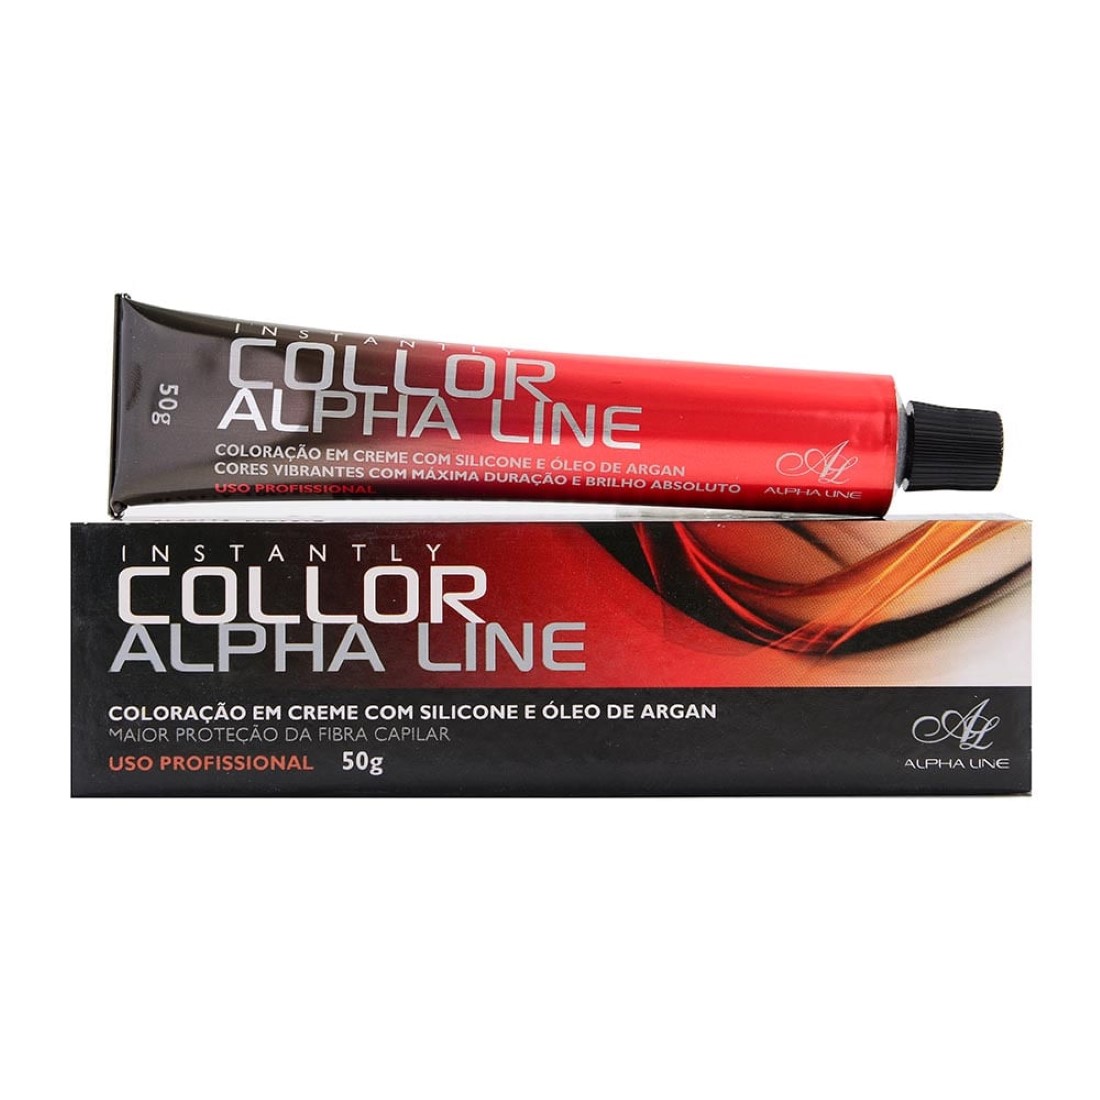 Coloração Instantly Collor Louro Médio Marrom Acinzentado 7.71- Alpha Line